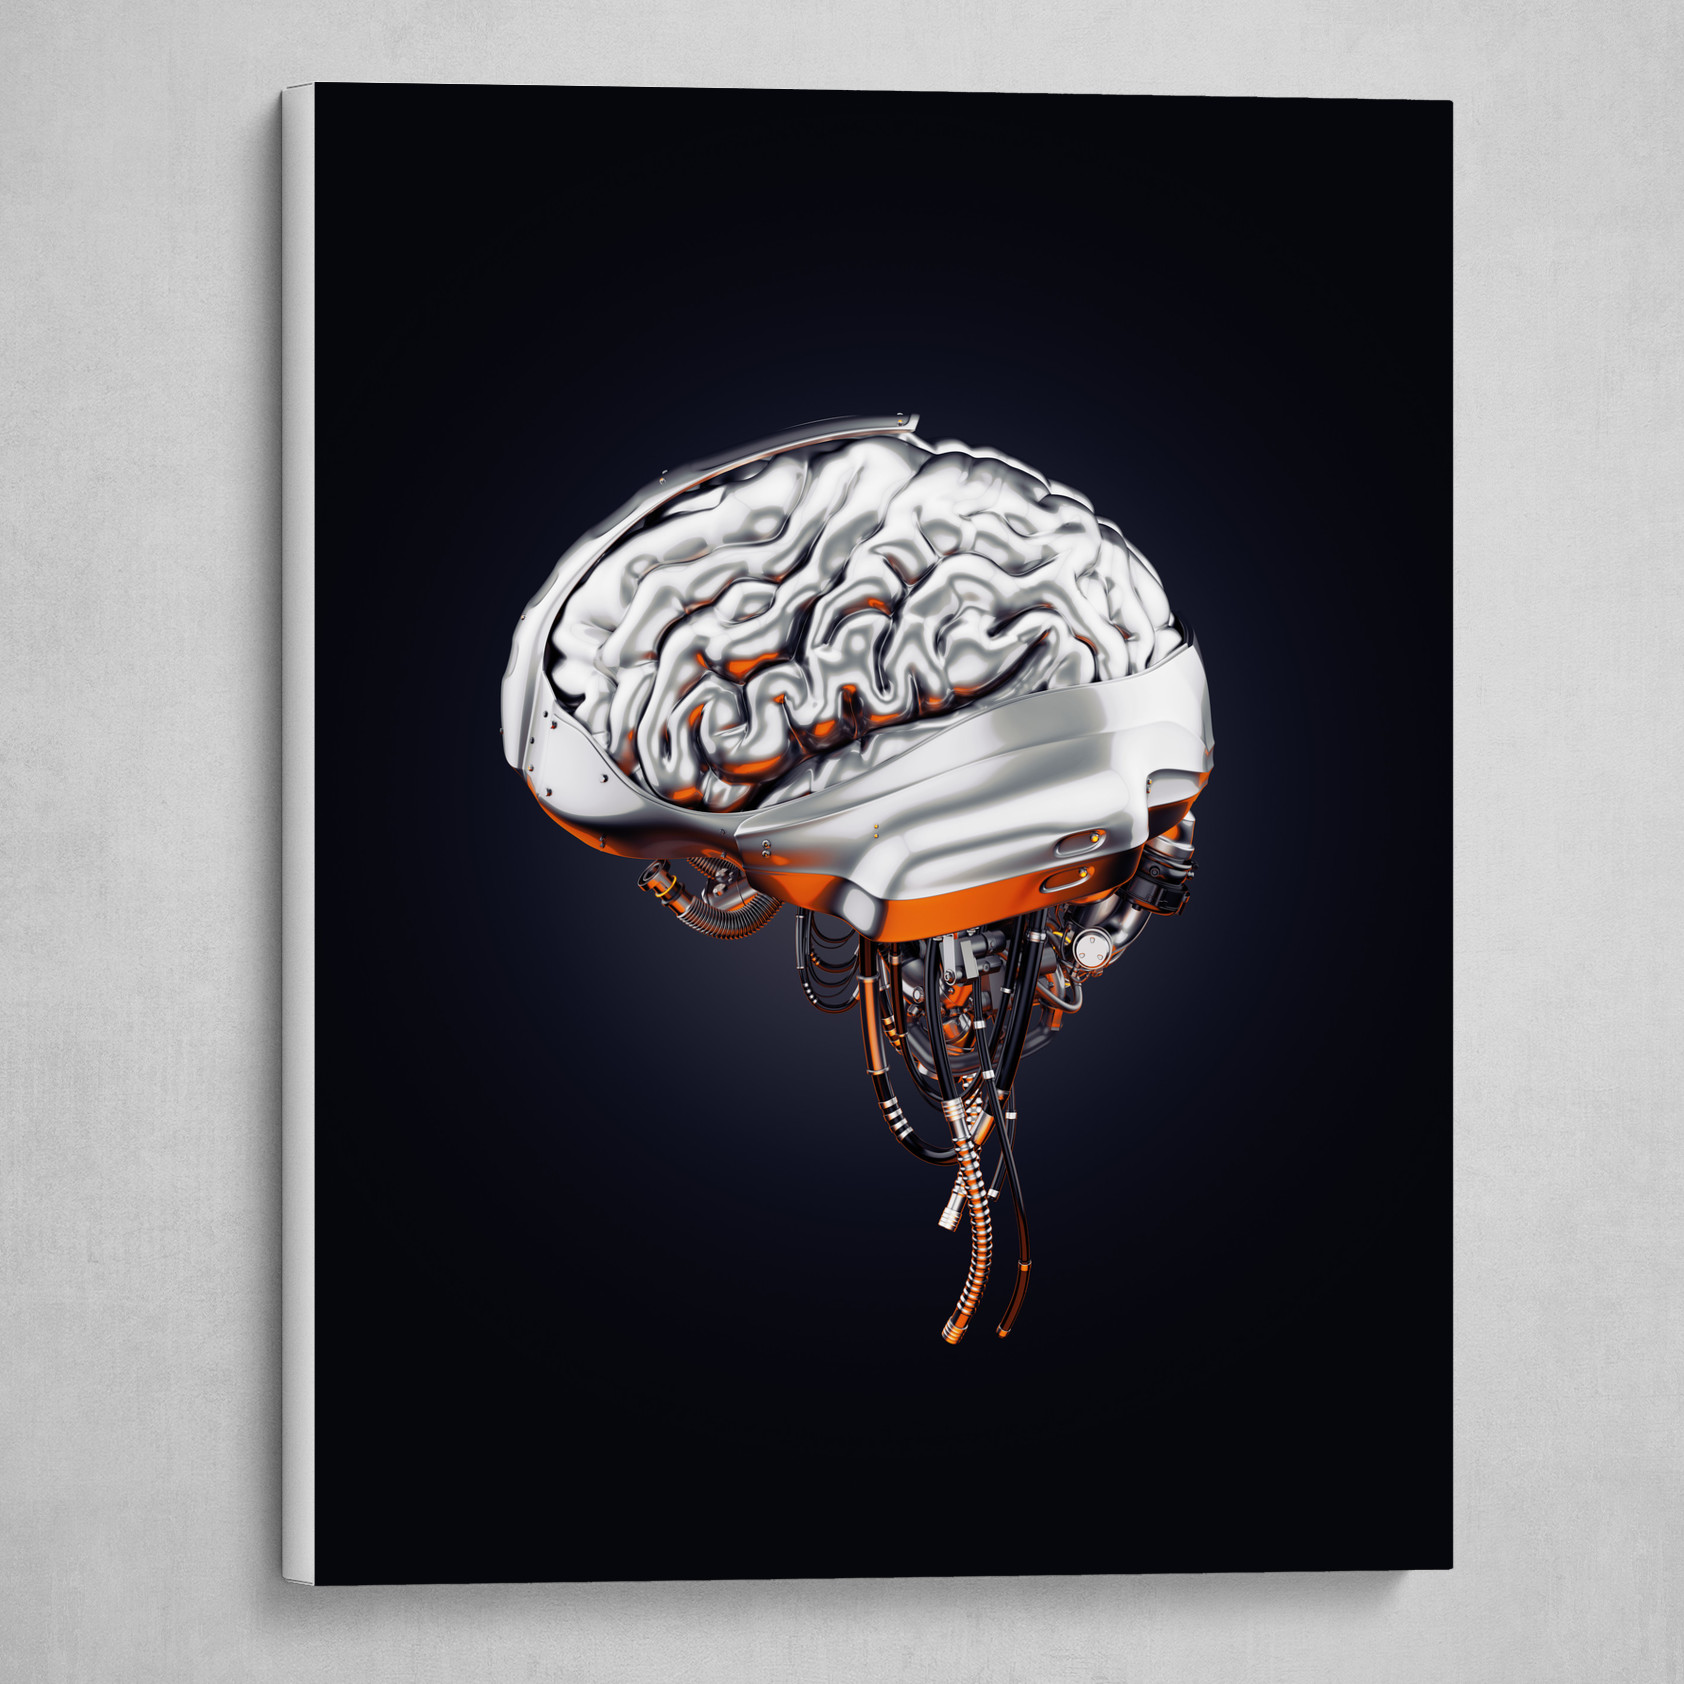 Steel robotic brain